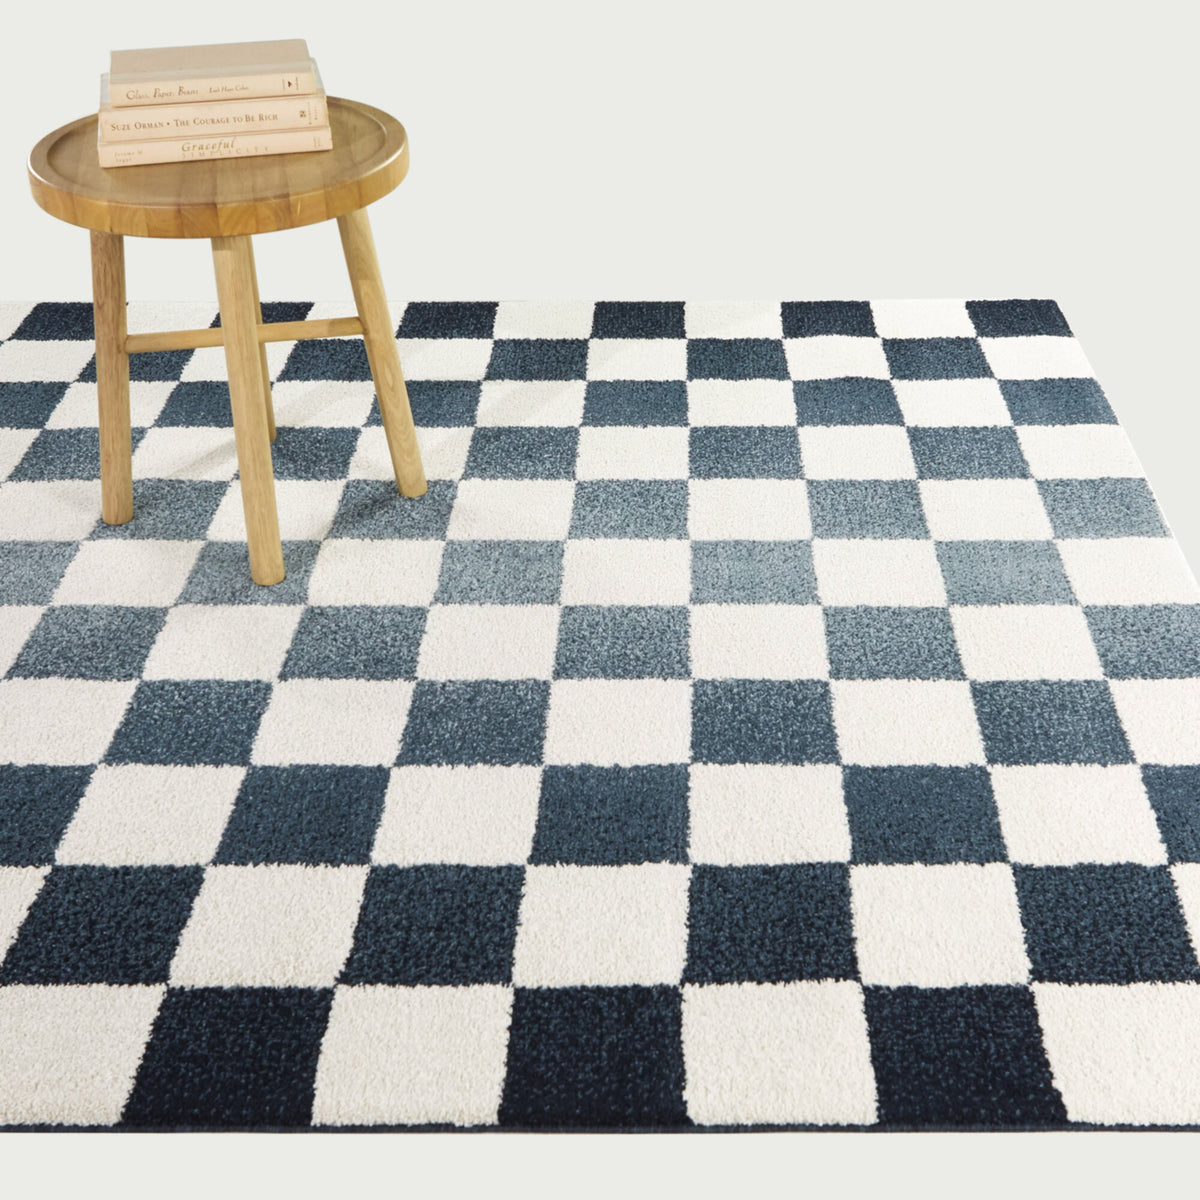 Conovici Modern Checkered Area Rug